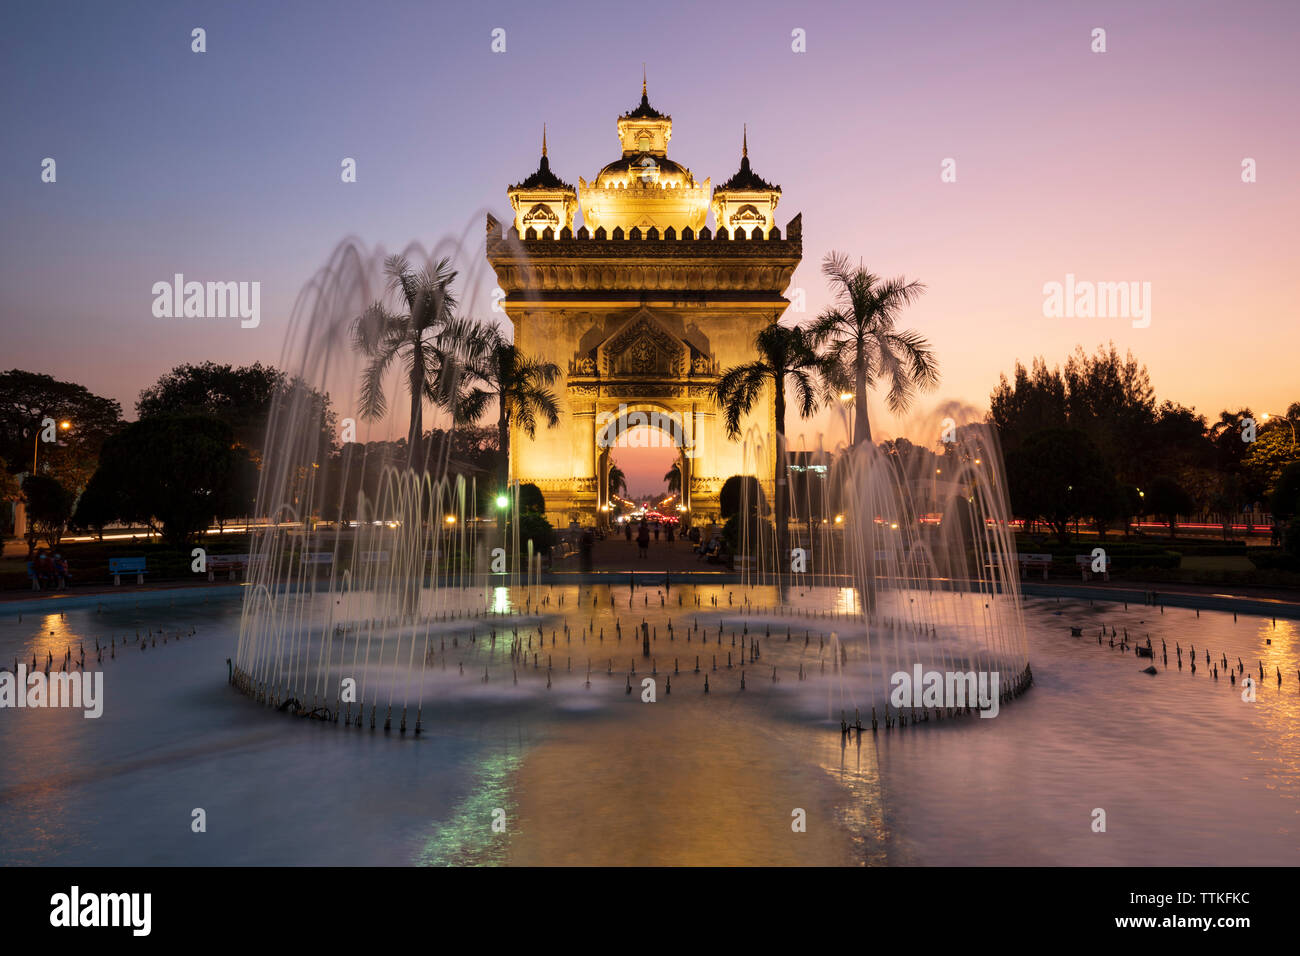 Patuxai Monumento della Vittoria (Vientiane Arc de Triomphe) e fontana illuminata al crepuscolo, Vientiane, Laos, sud-est asiatico Foto Stock